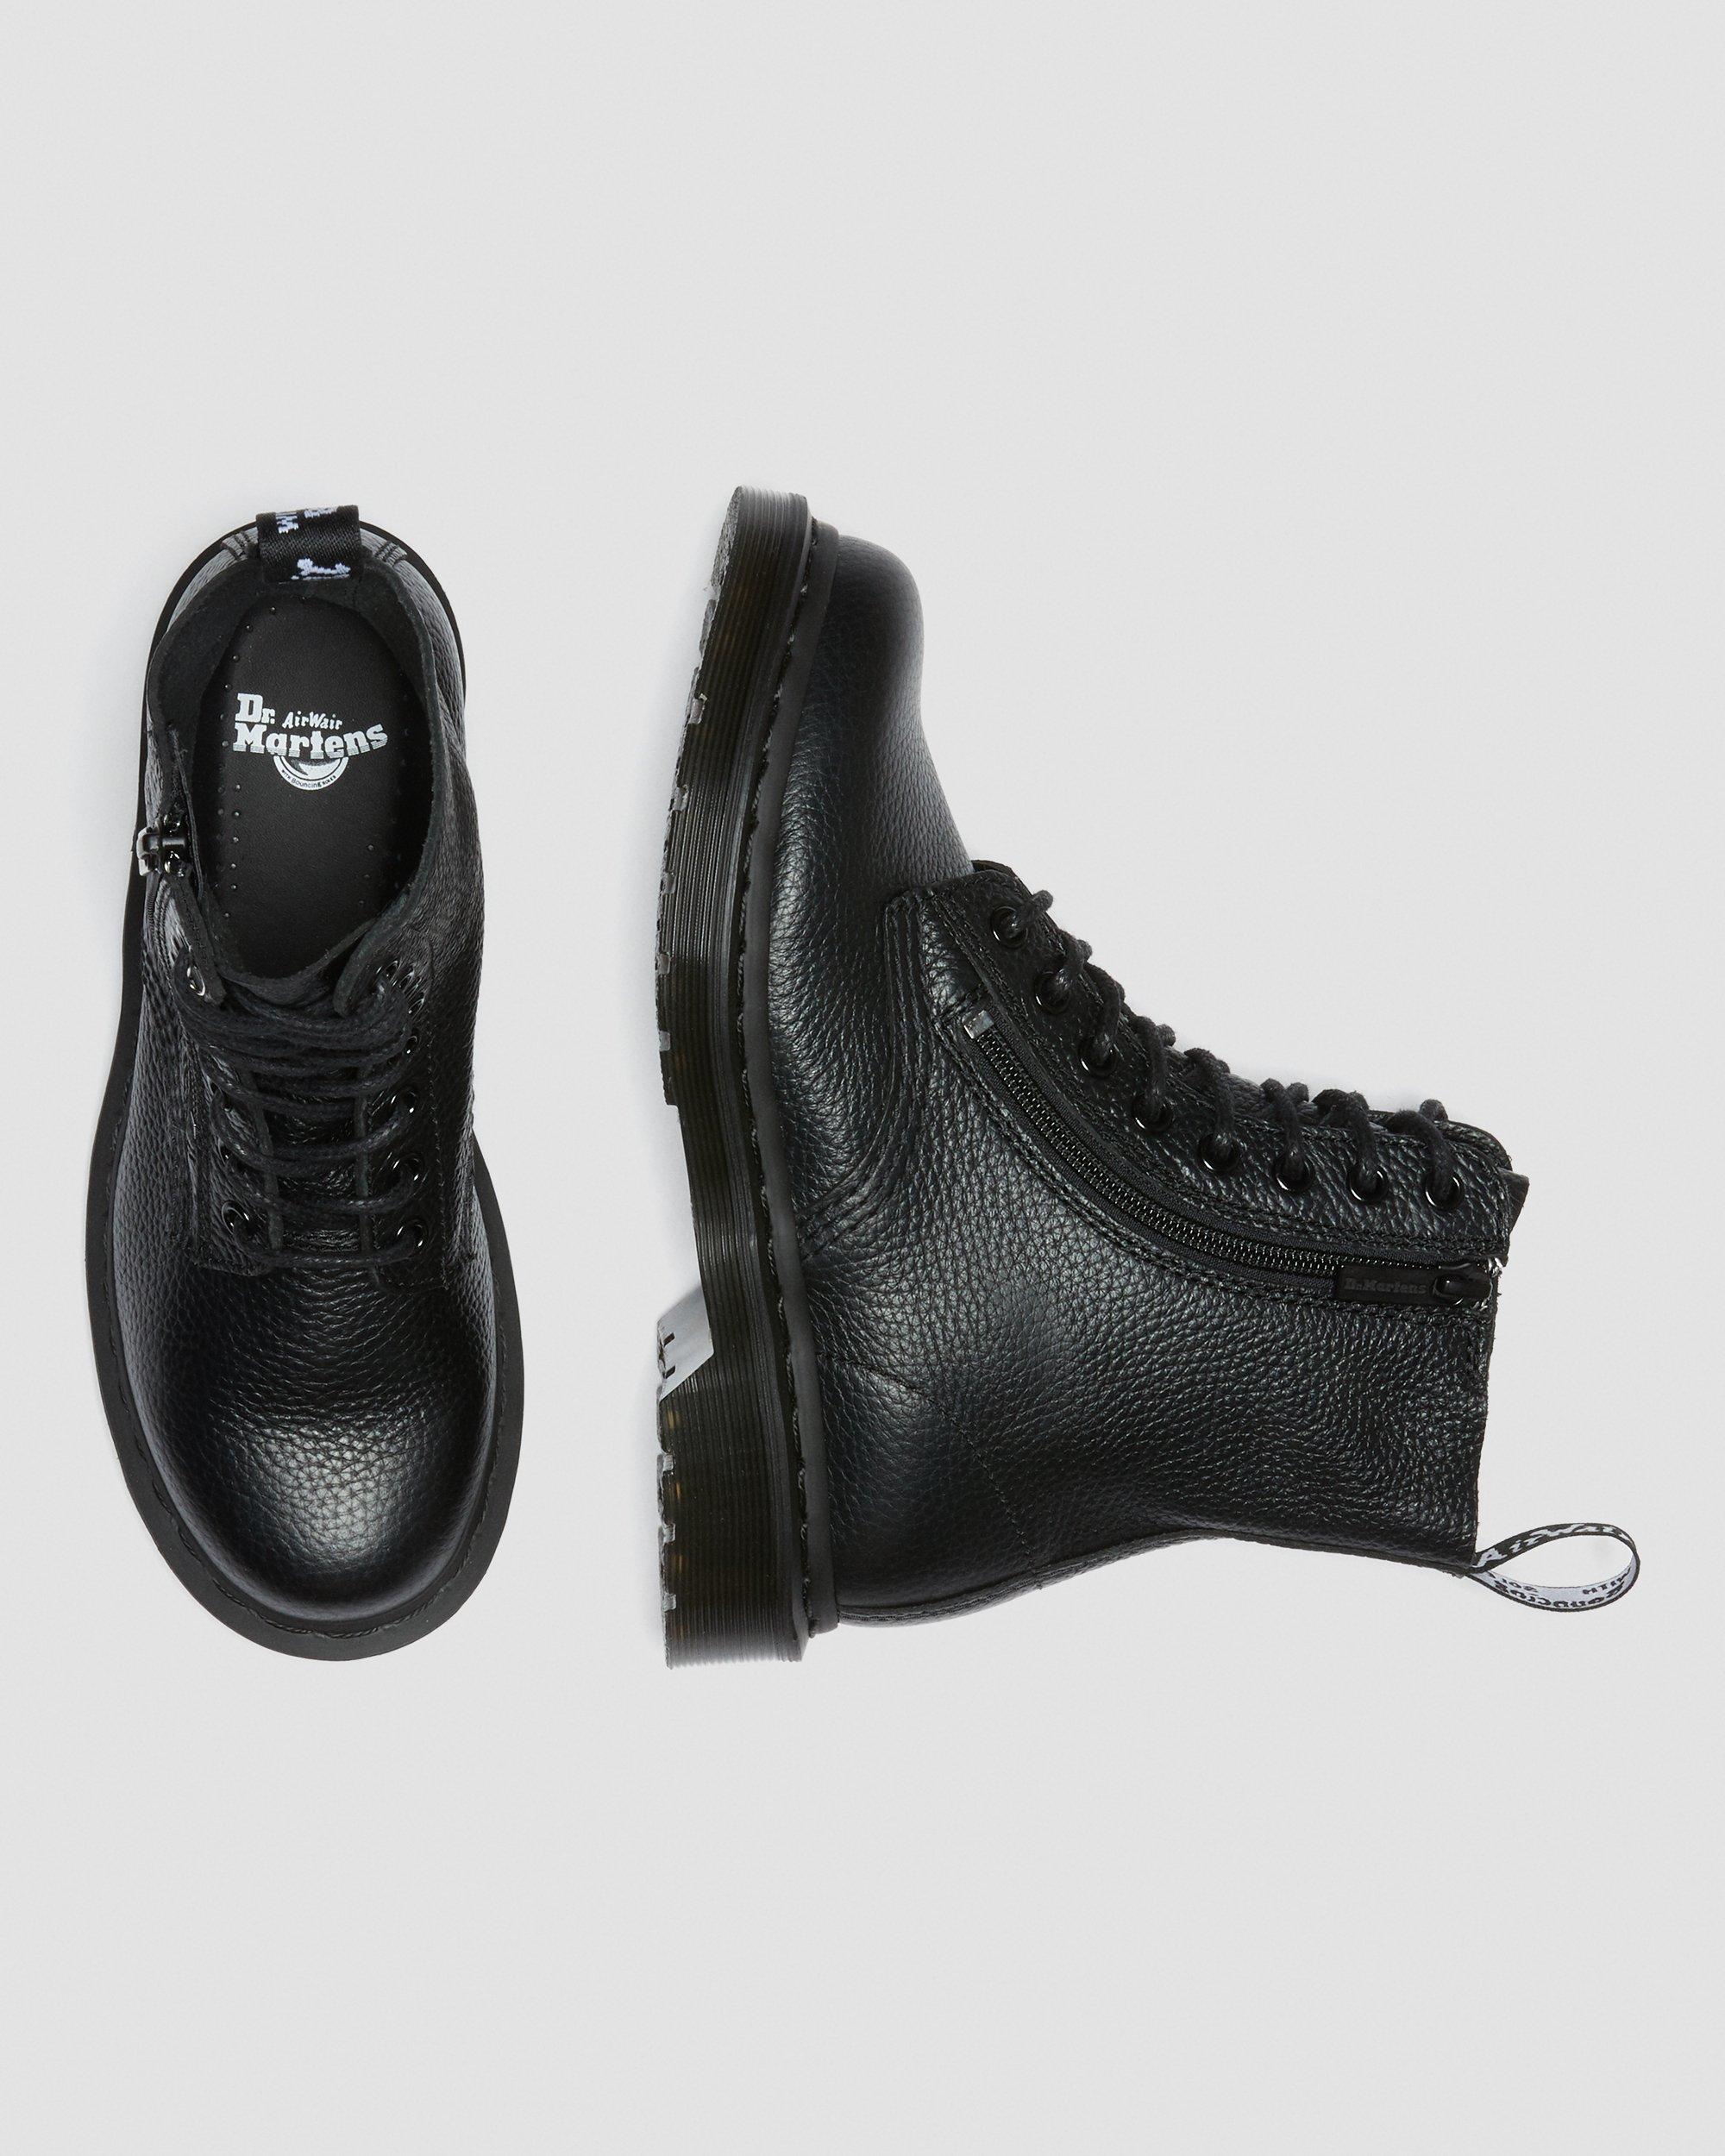 1460 Pascal Women's Leather Zipper Lace Up Boots, Black | Dr. Martens